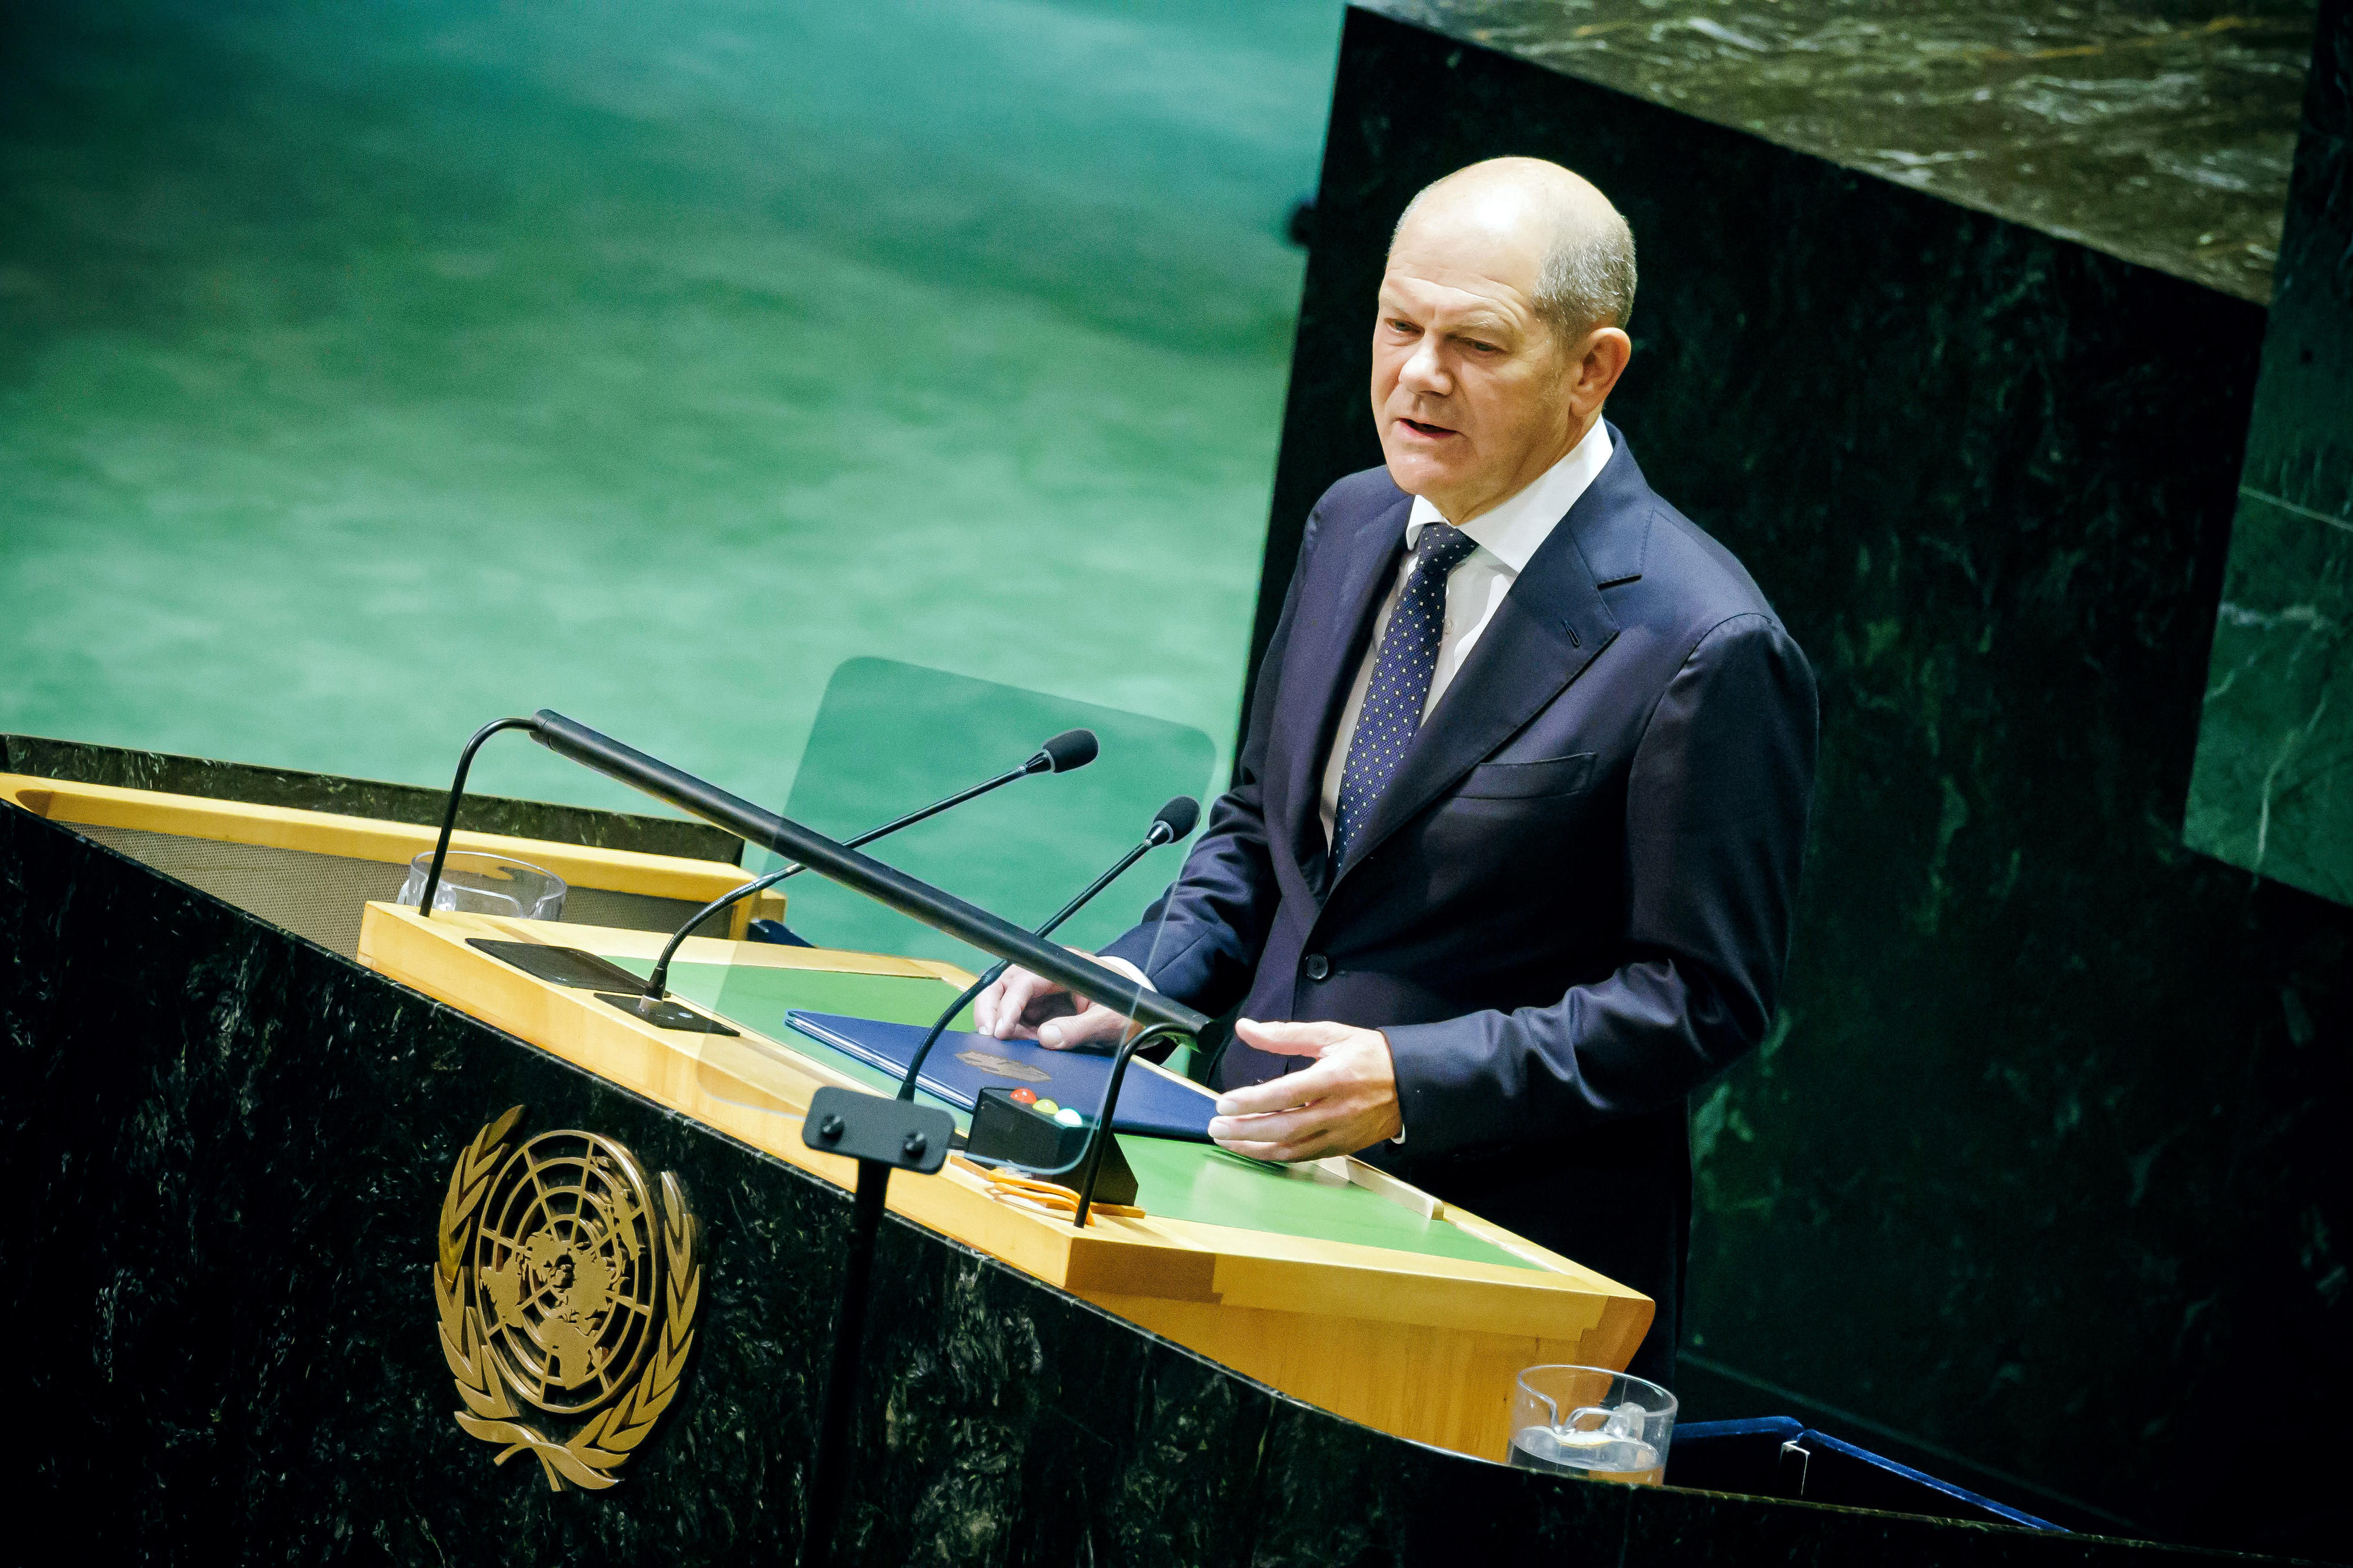 Bundeskanzler Olaf Scholz spricht am 19. September vor der UN-Generalversammlung in New York